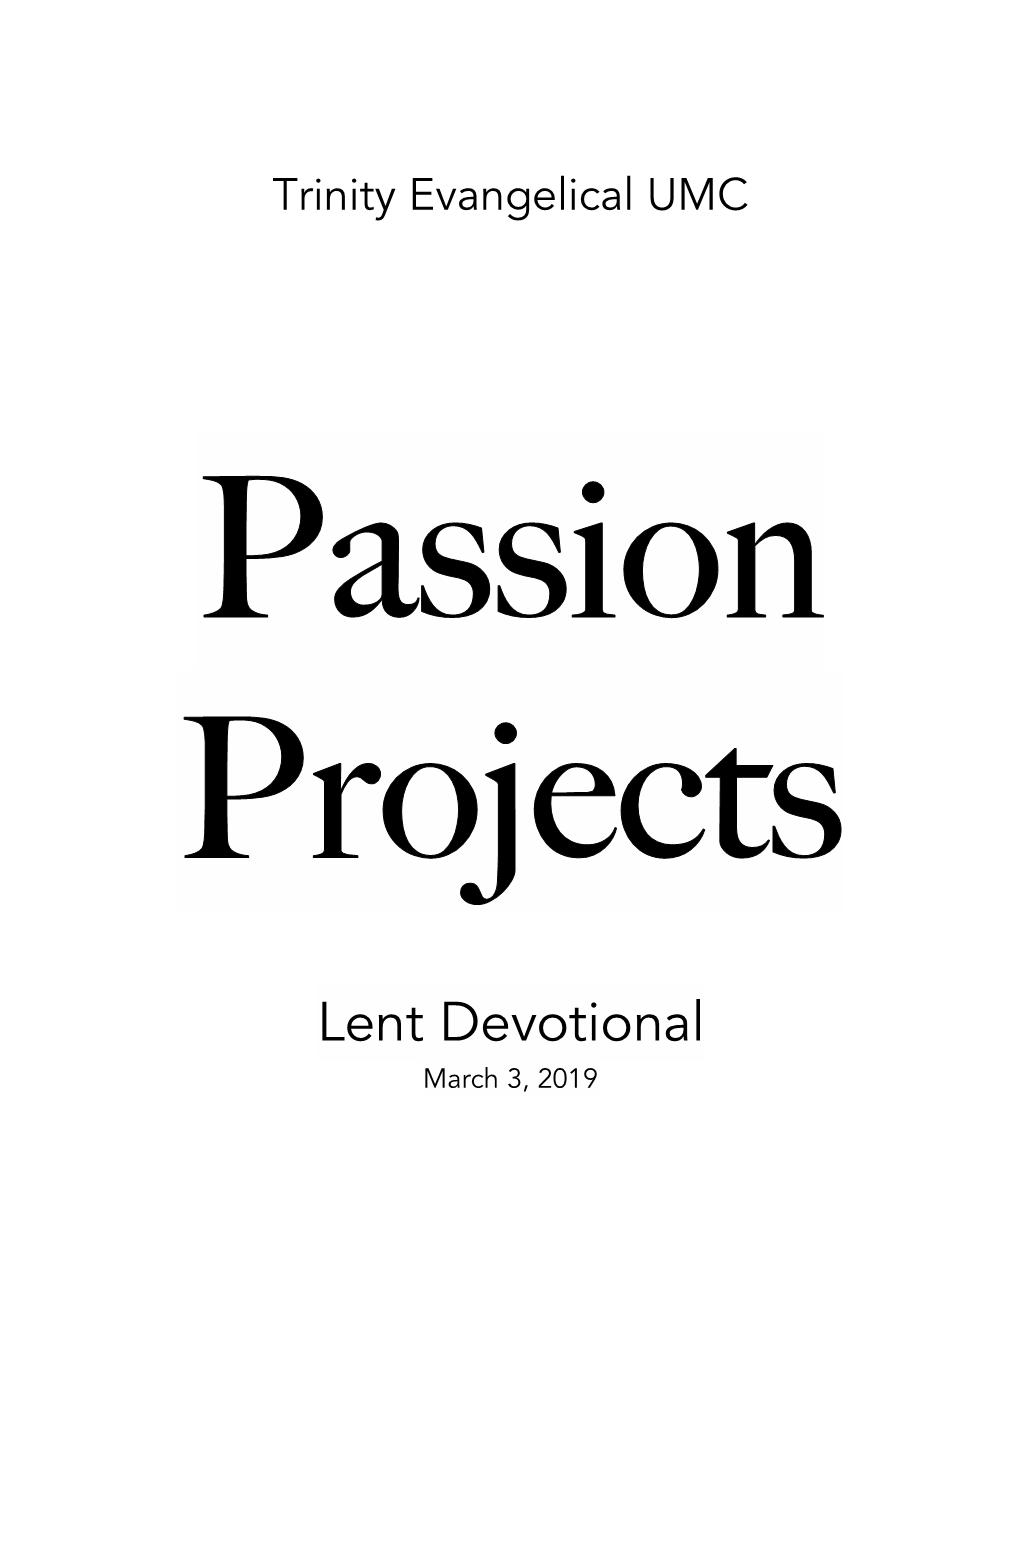 Lent Devotional March 3, 2019